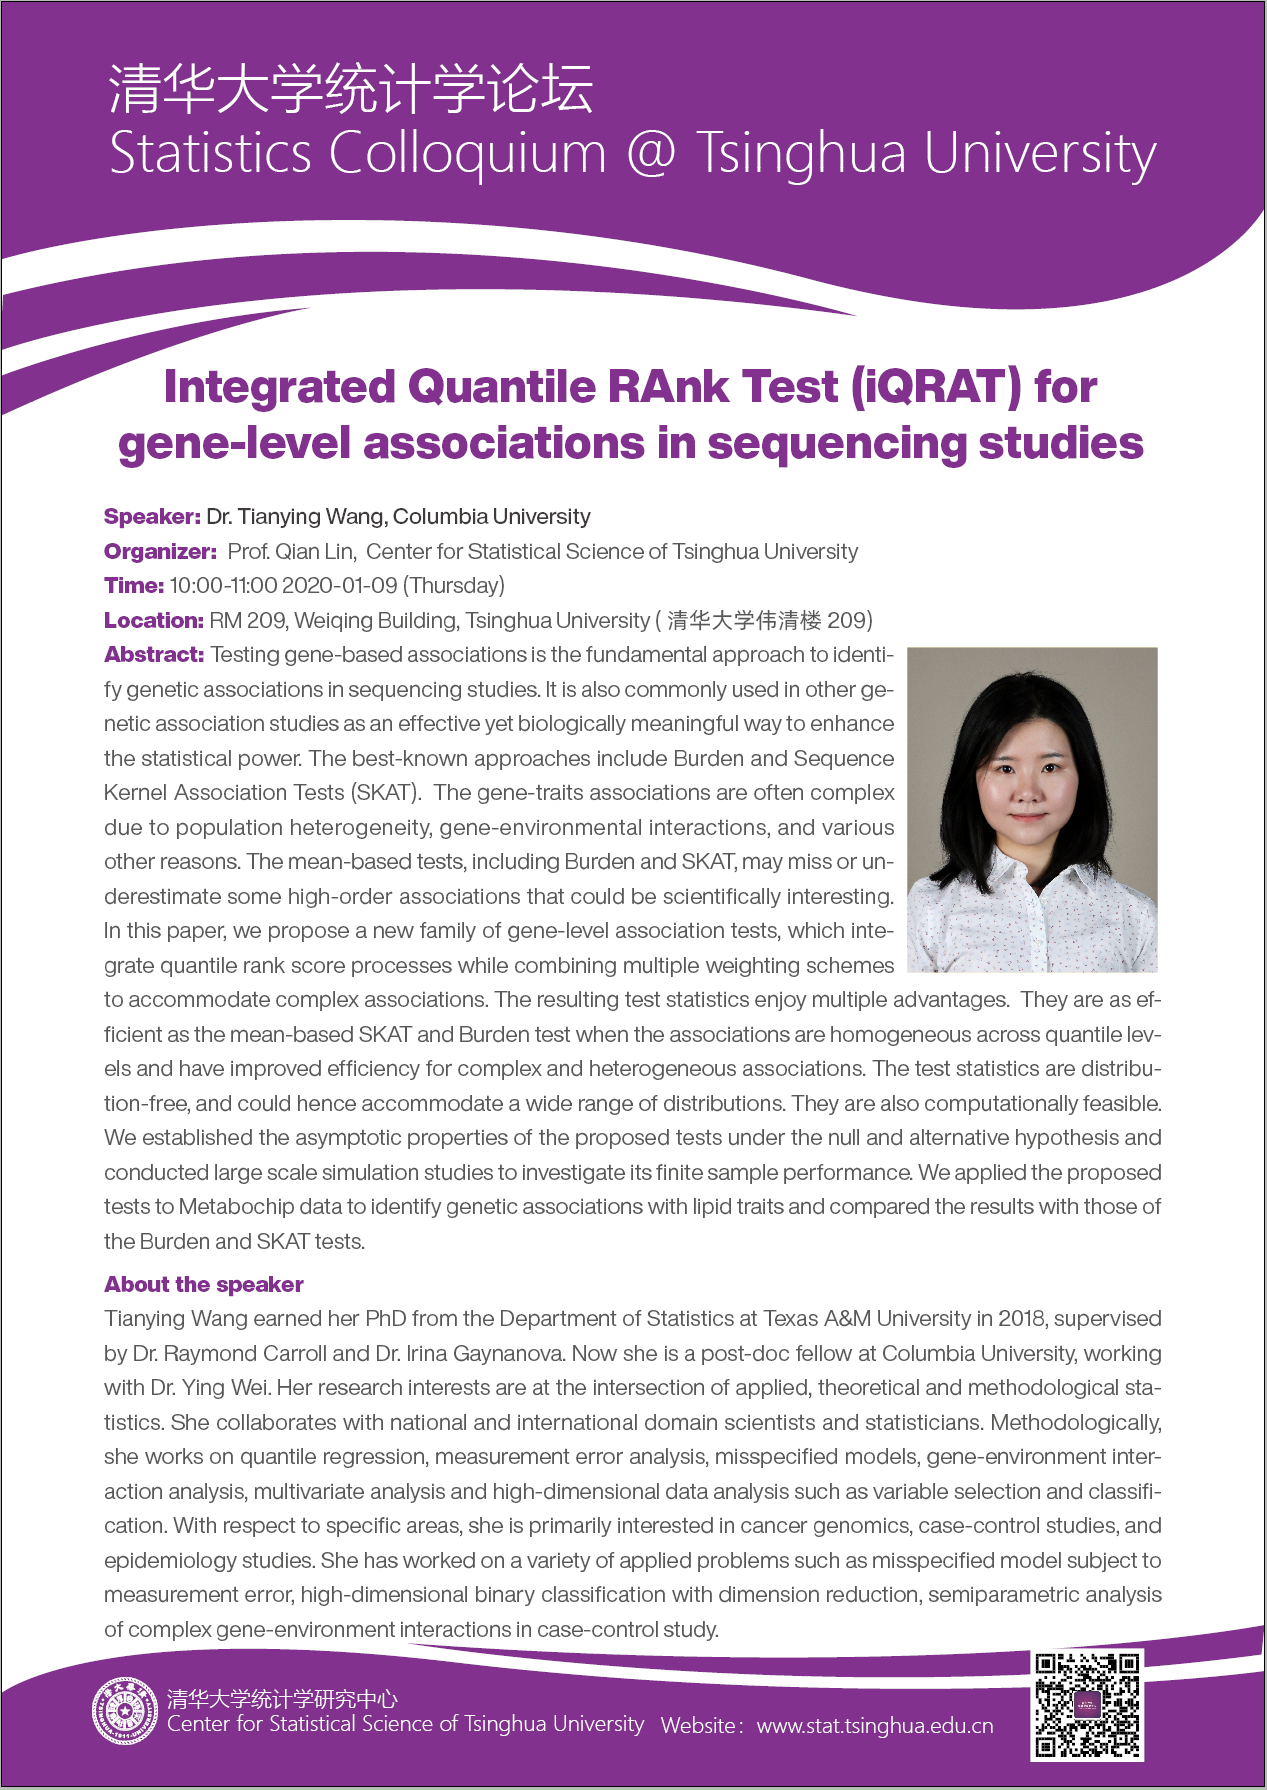 【统计学论坛】Integrated Quantile RAnk Test (iQRAT) for gene-level associations in sequencing studies